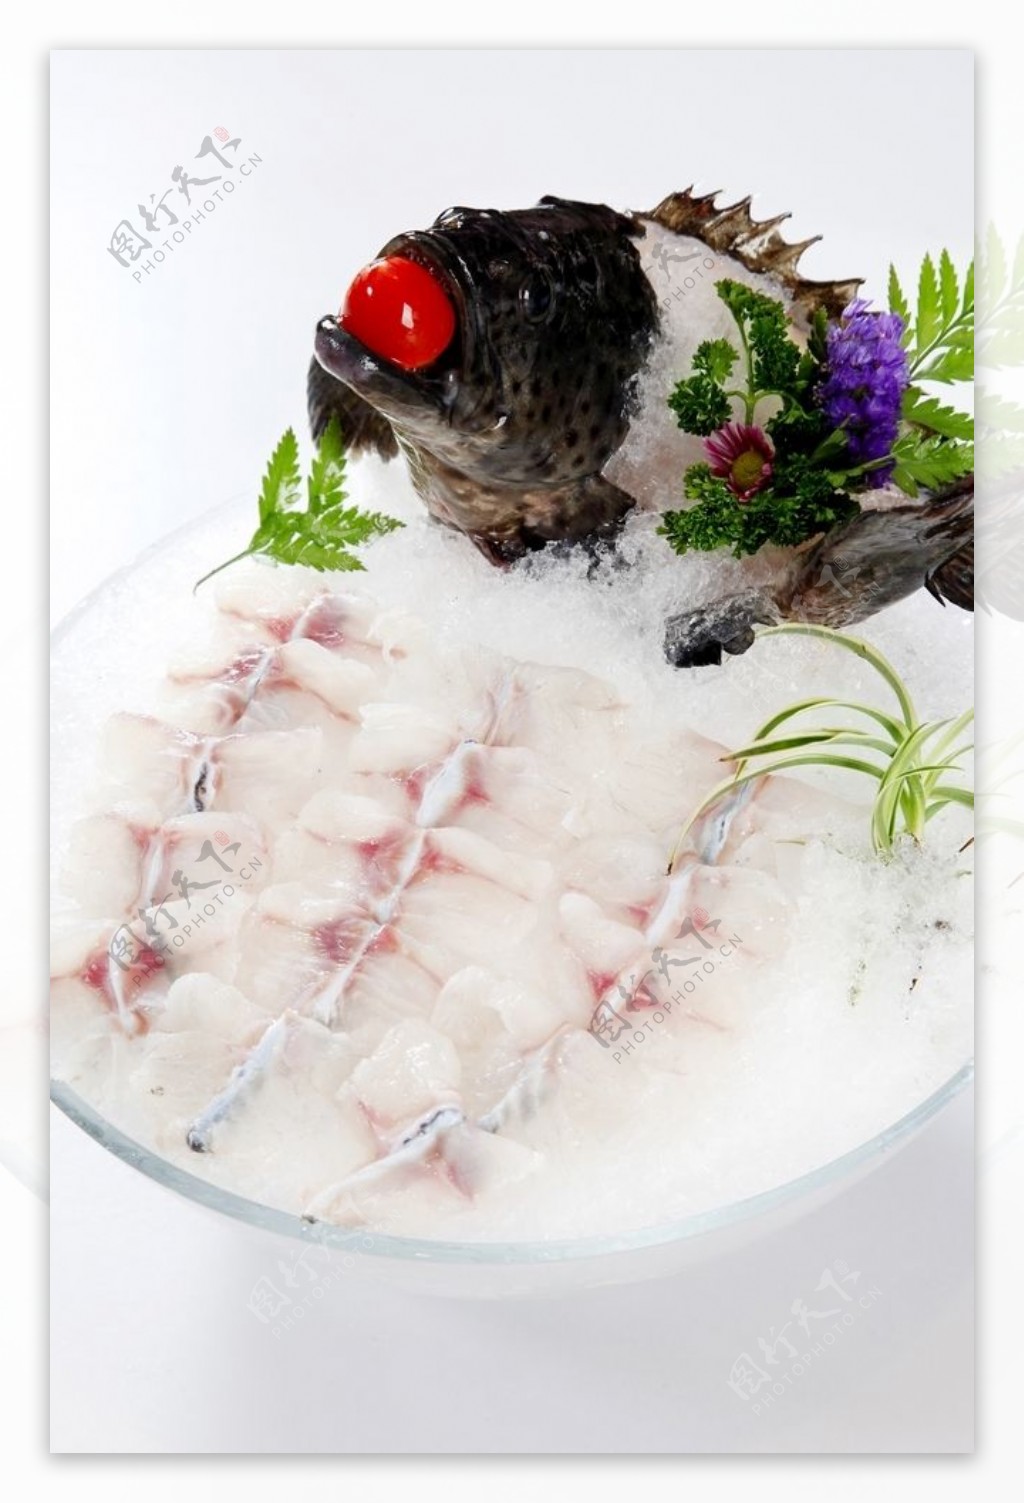 海鲜刺身拼盘图片